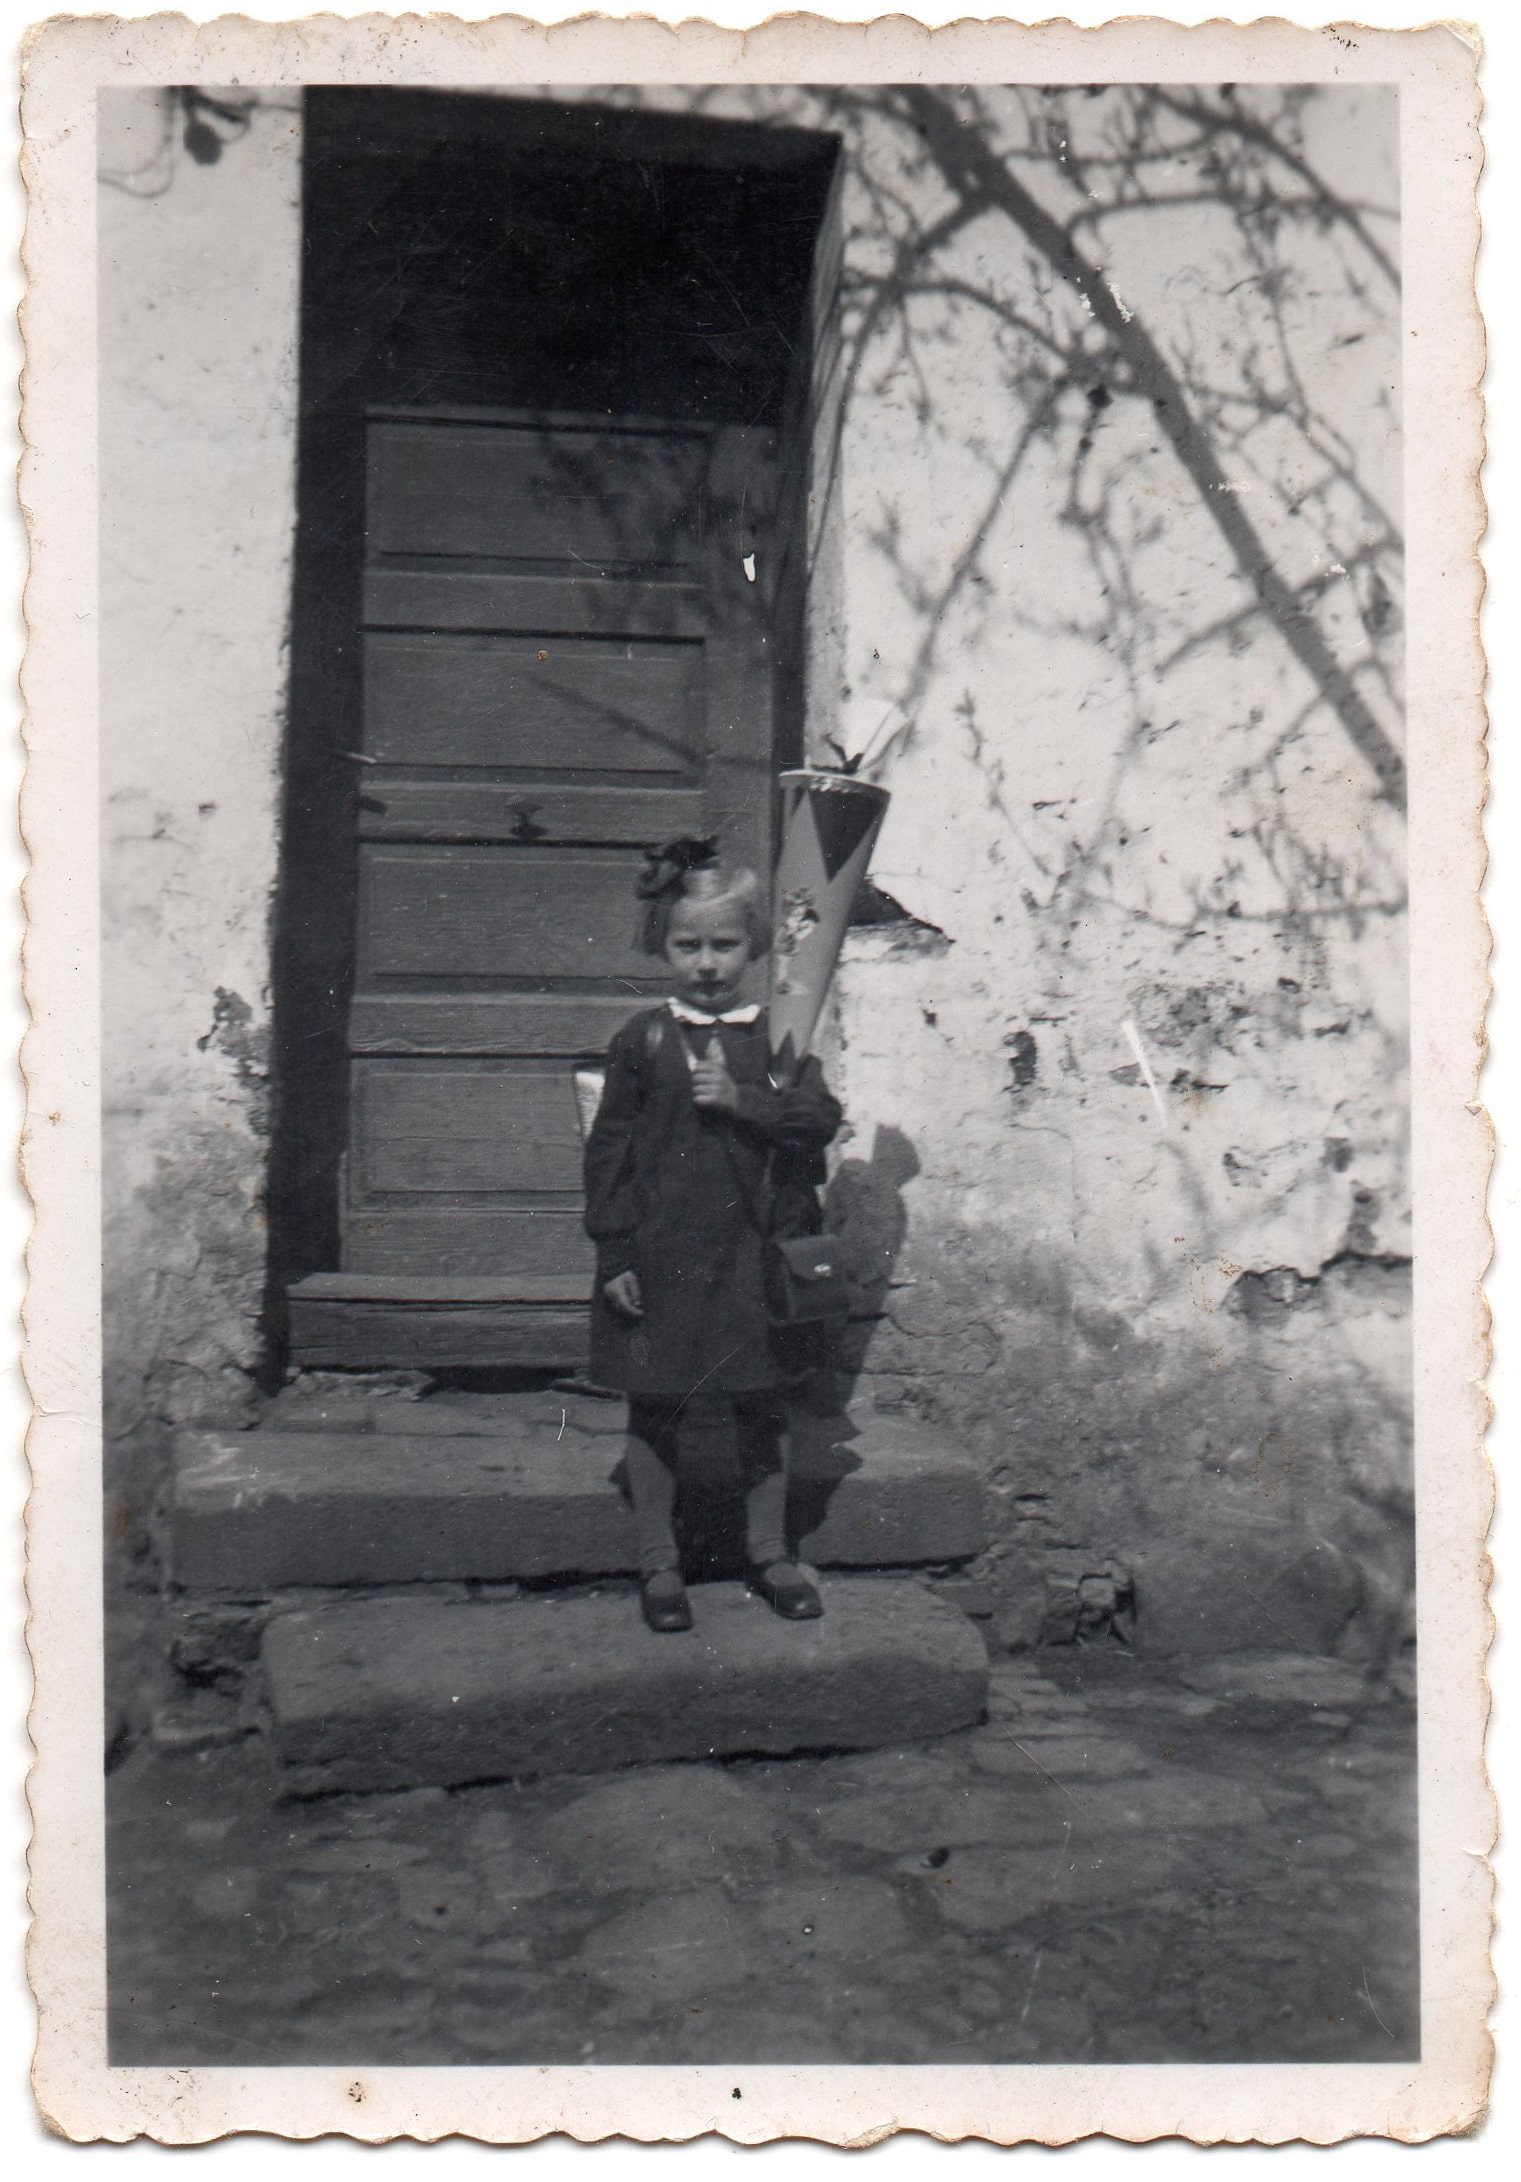 Einschulung mit Schultüte ca. 1938